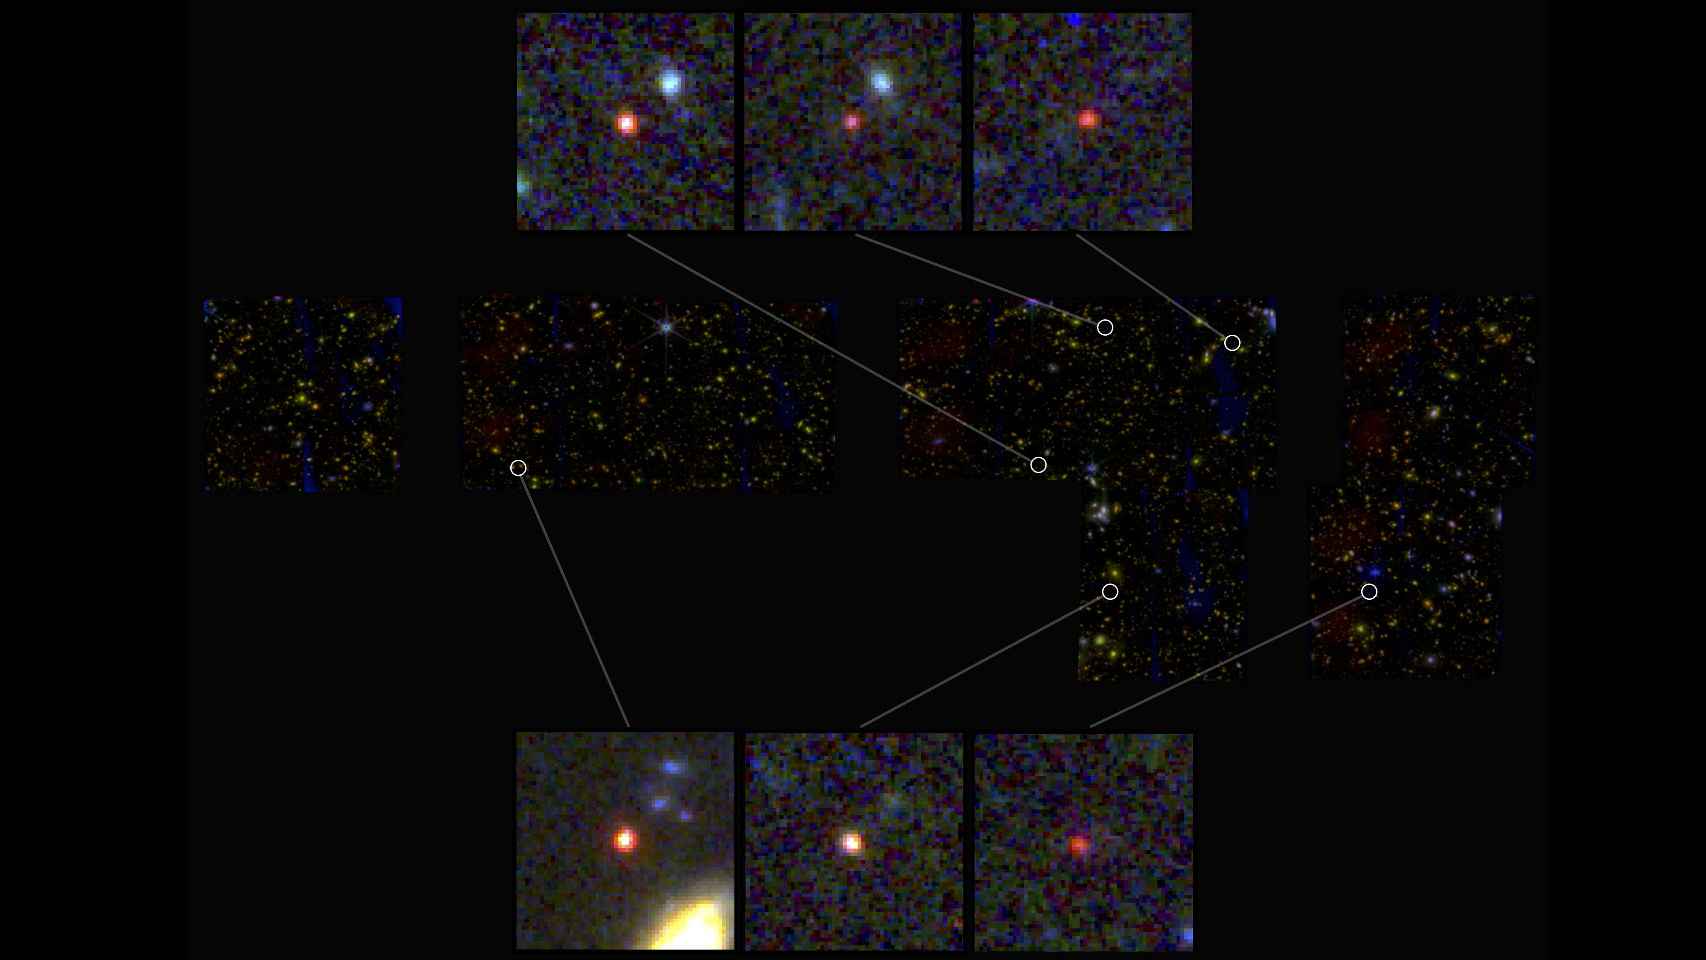 El telescopio James Webb descubre seis nuevas galaxias masivas que se consideraban imposibles  743435987_231125231_1706x960